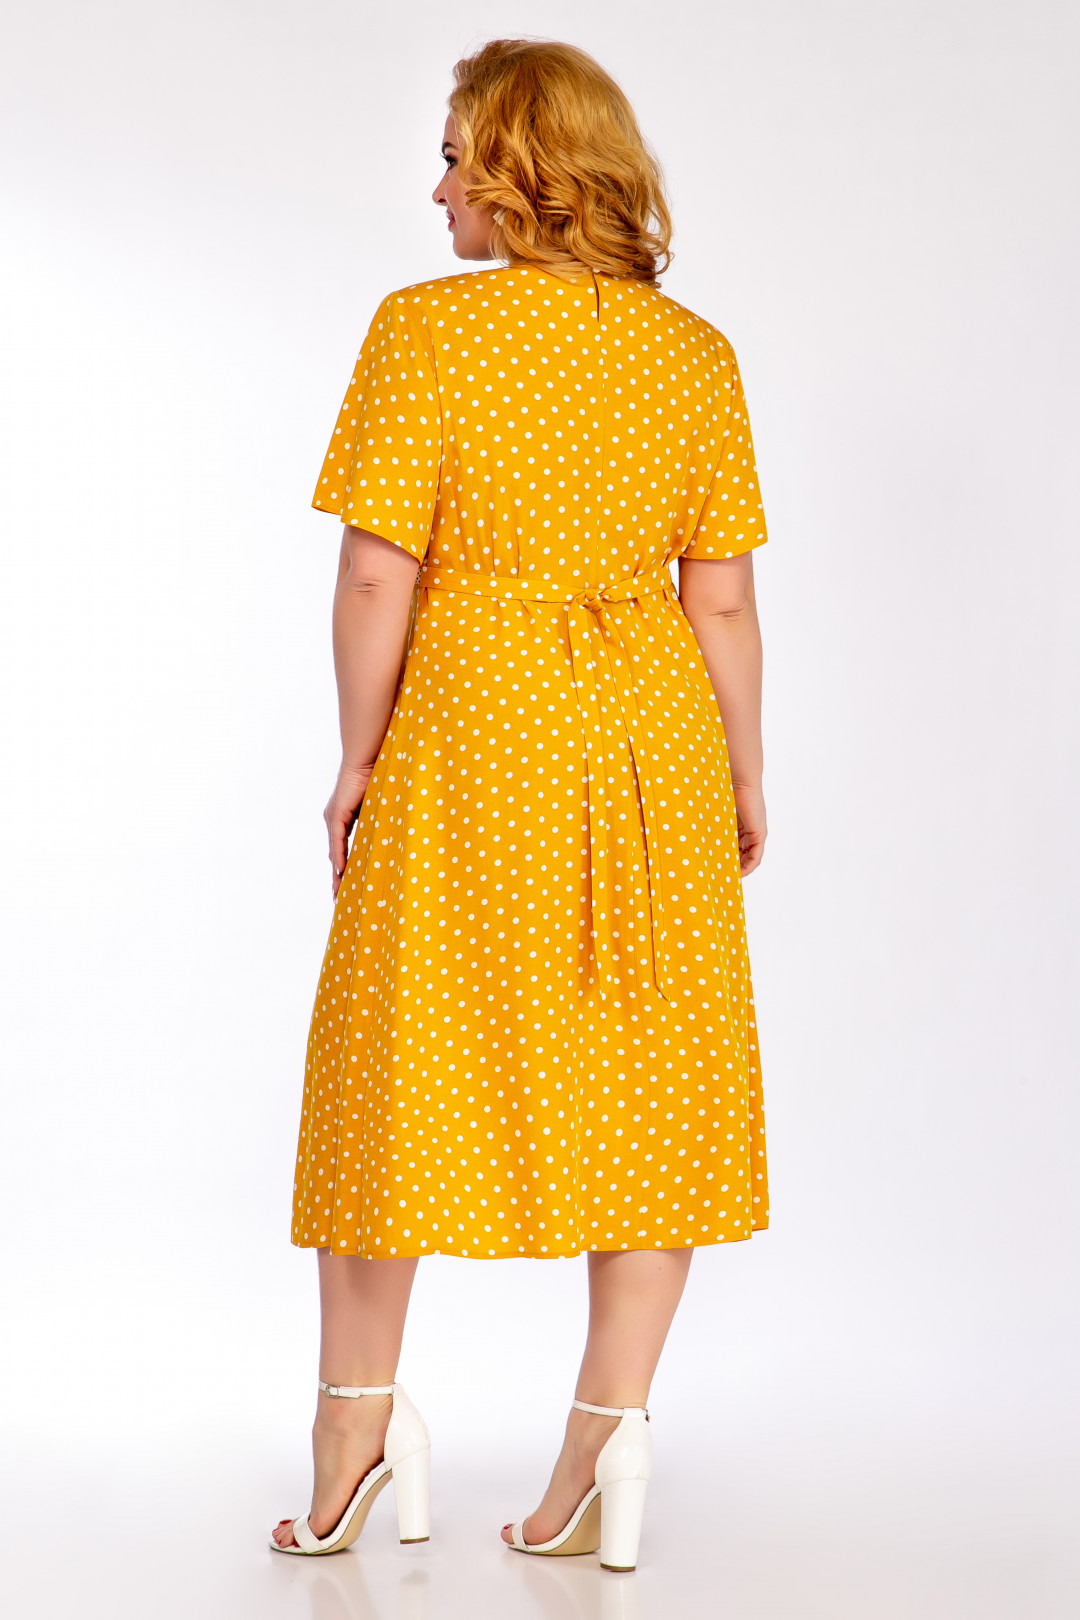 Платье Элль-стиль 2149 желтый в горох